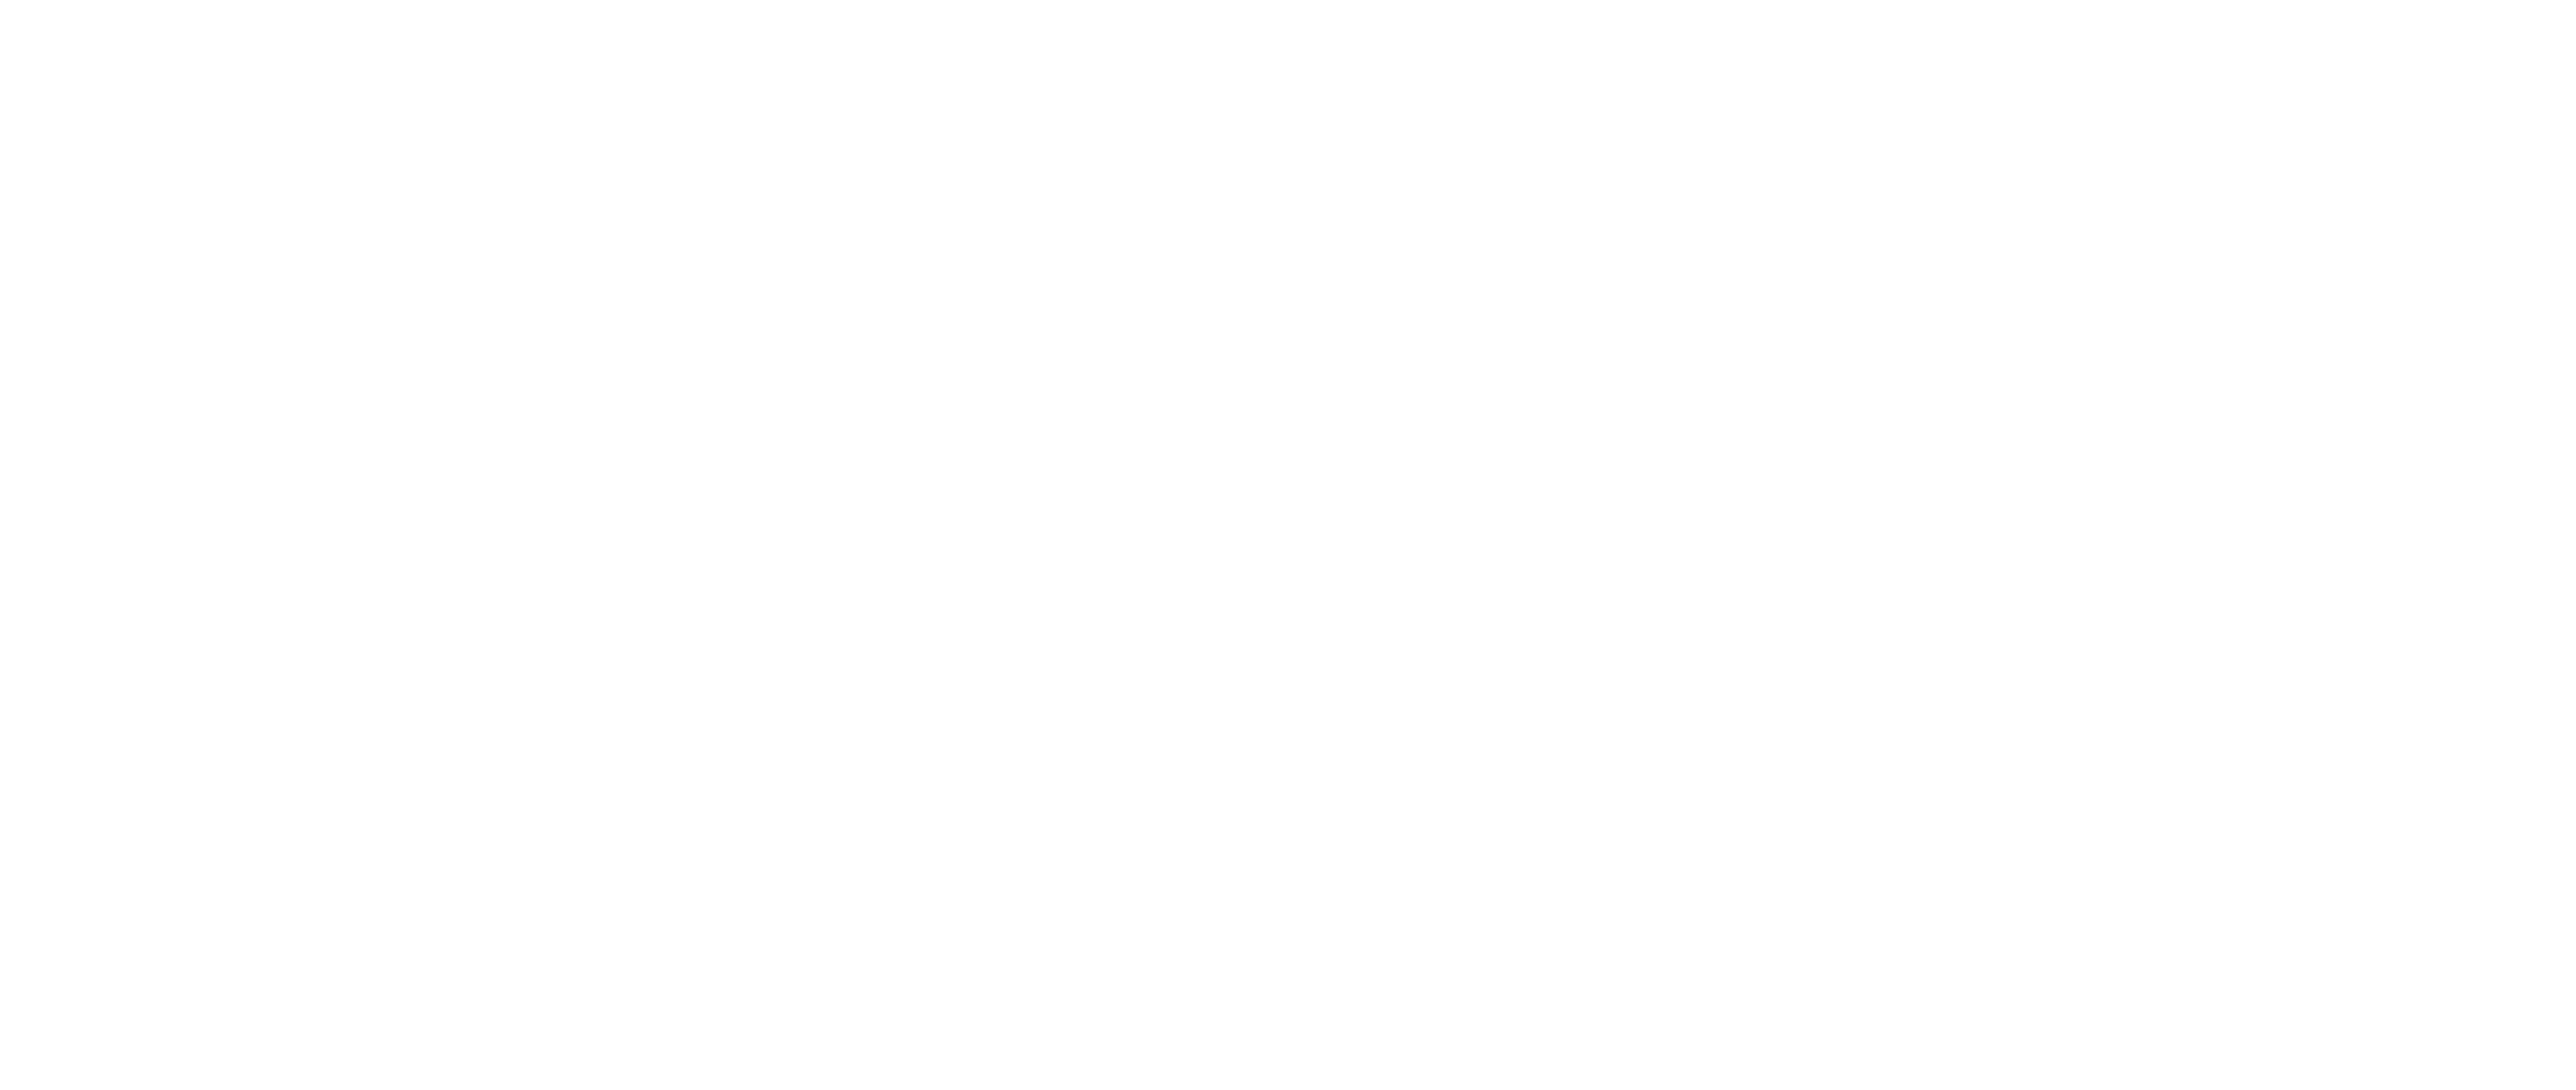 TDZ Technologie- und Dienstleistungszentrum Donau Böhmerwald Bezirk Rohrbach GmbH